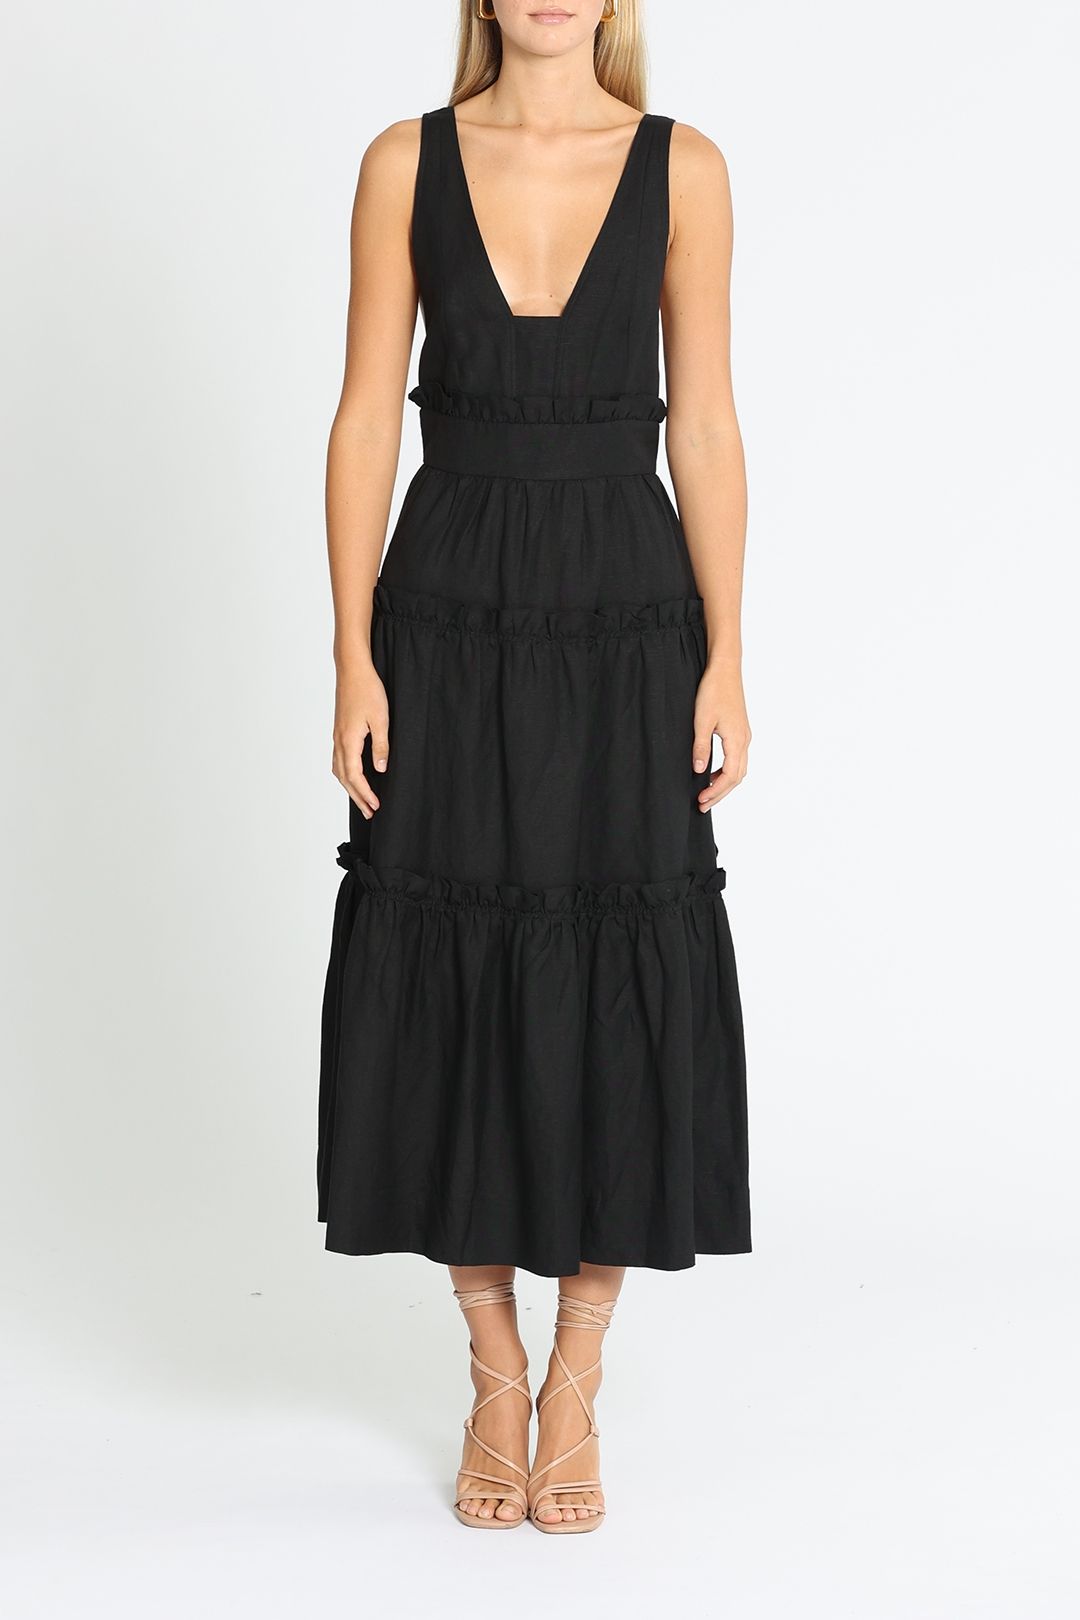 Hire Tiered Midi Dress in Black | Shona Joy | GlamCorner